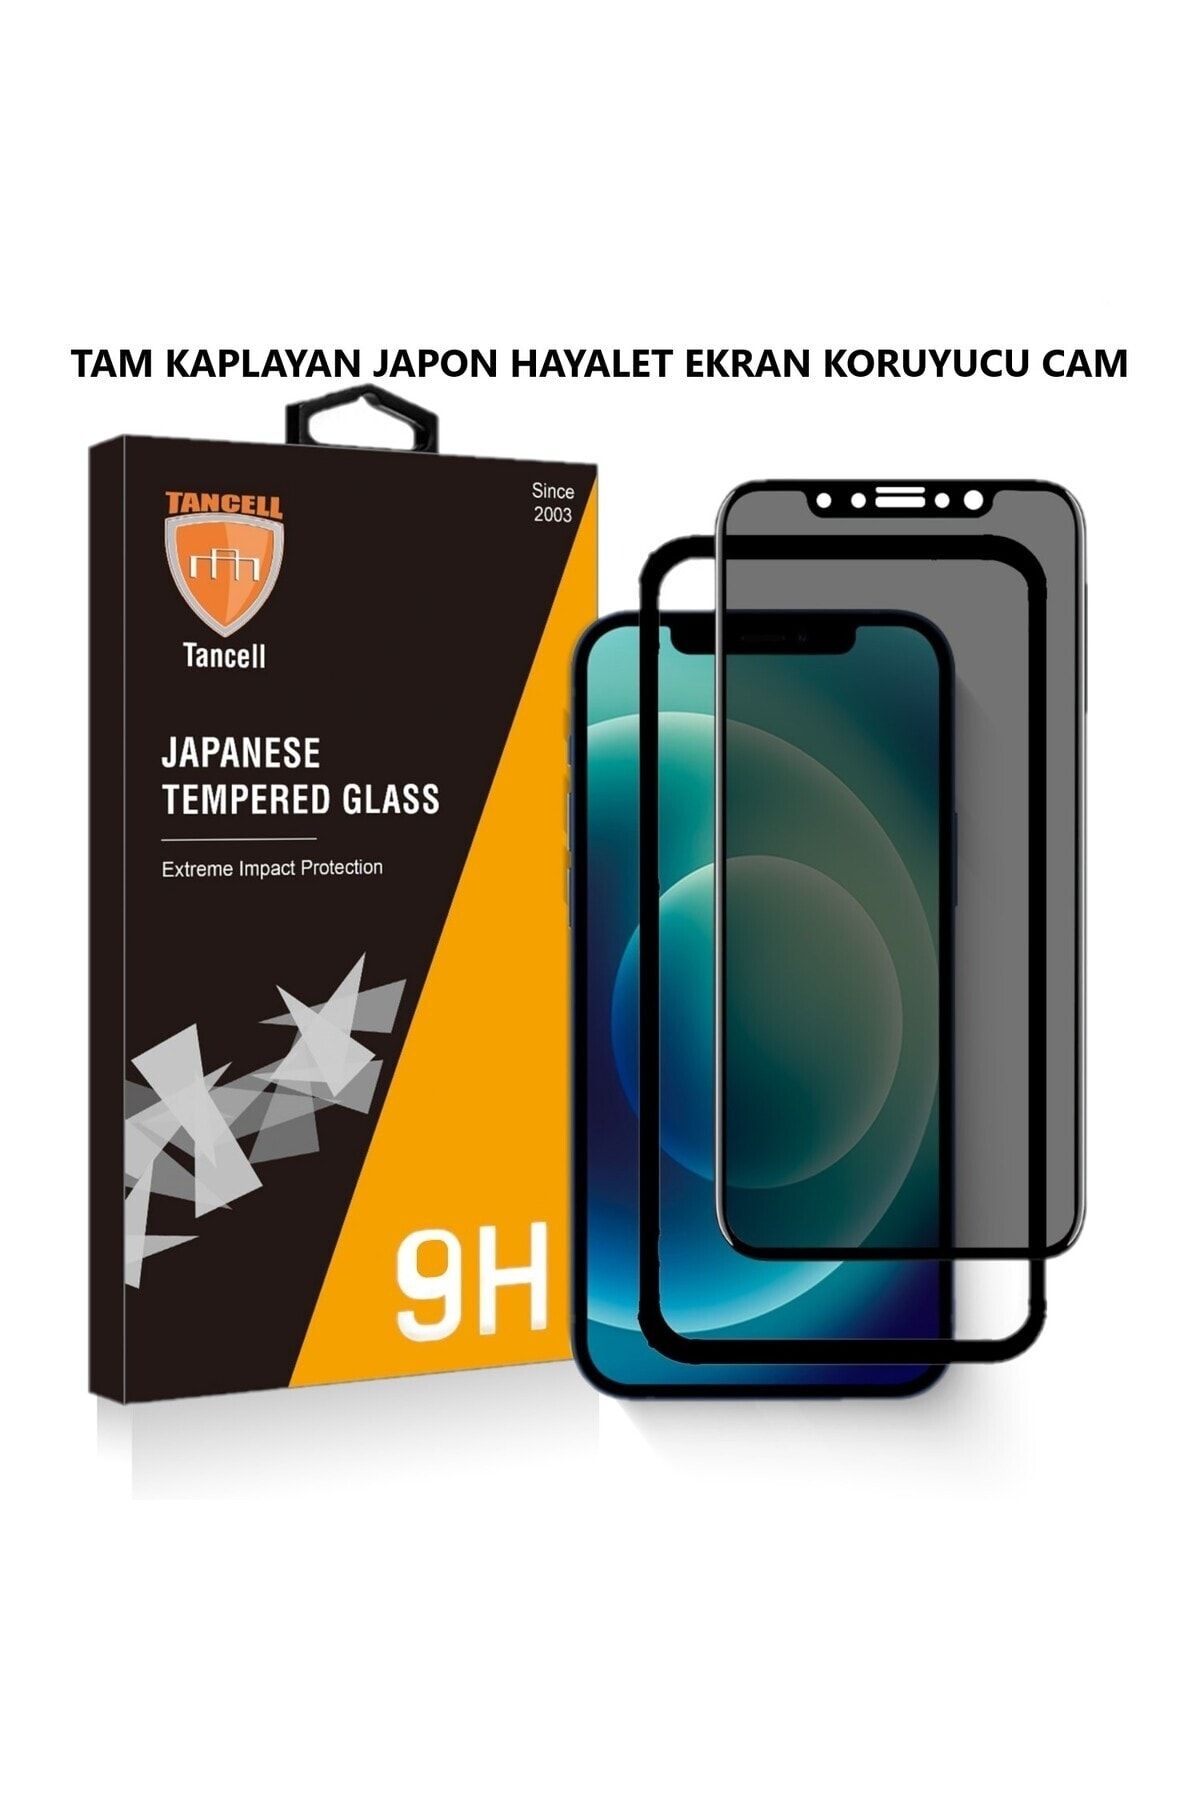 TANCELL İphone 13 Pro Max Uyumlu Hayalet Ekran Koruyucu Tam Kaplayan Japon Kırılmaz Cam 6,7 Inc (1 ADET)